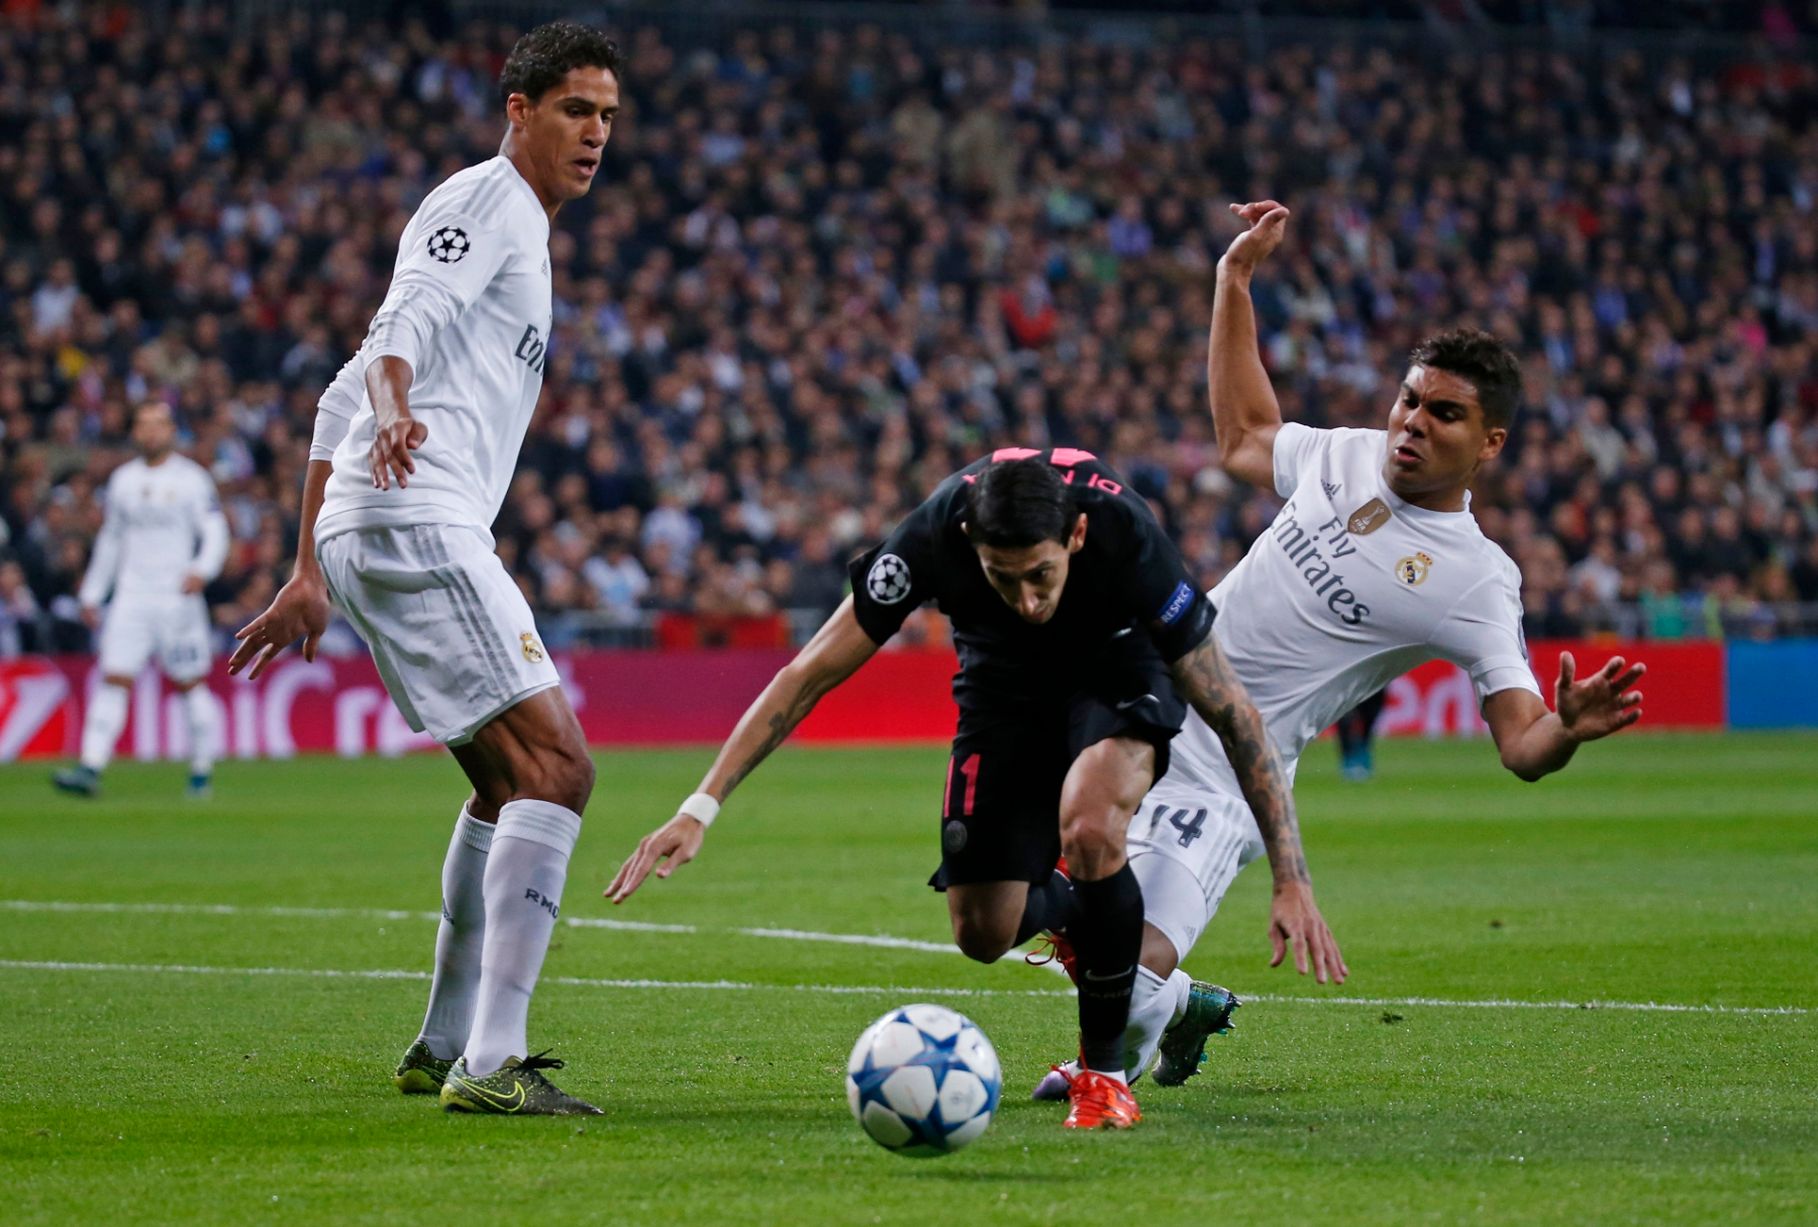 Real Madrid - PSG và hành trình đi tìm cái tôi 'lạc trôi' | Bóng Đá1818 x 1227